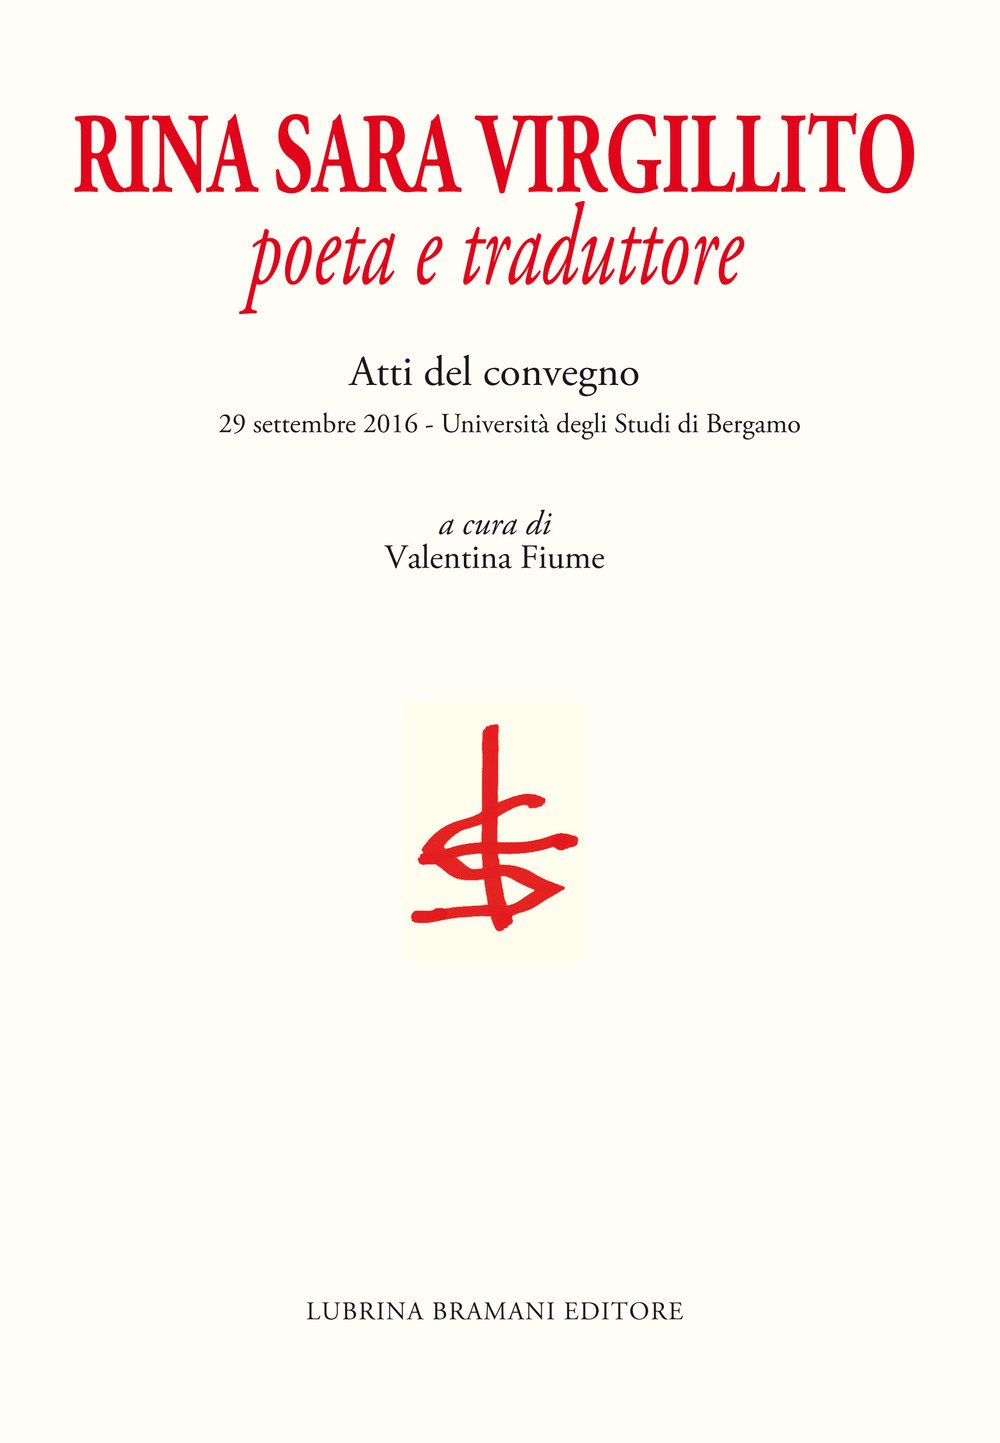 Rina Sara Virgillito. Poeta e traduttore. Atti del Convegno (Bergamo, 29 settembre 2016)